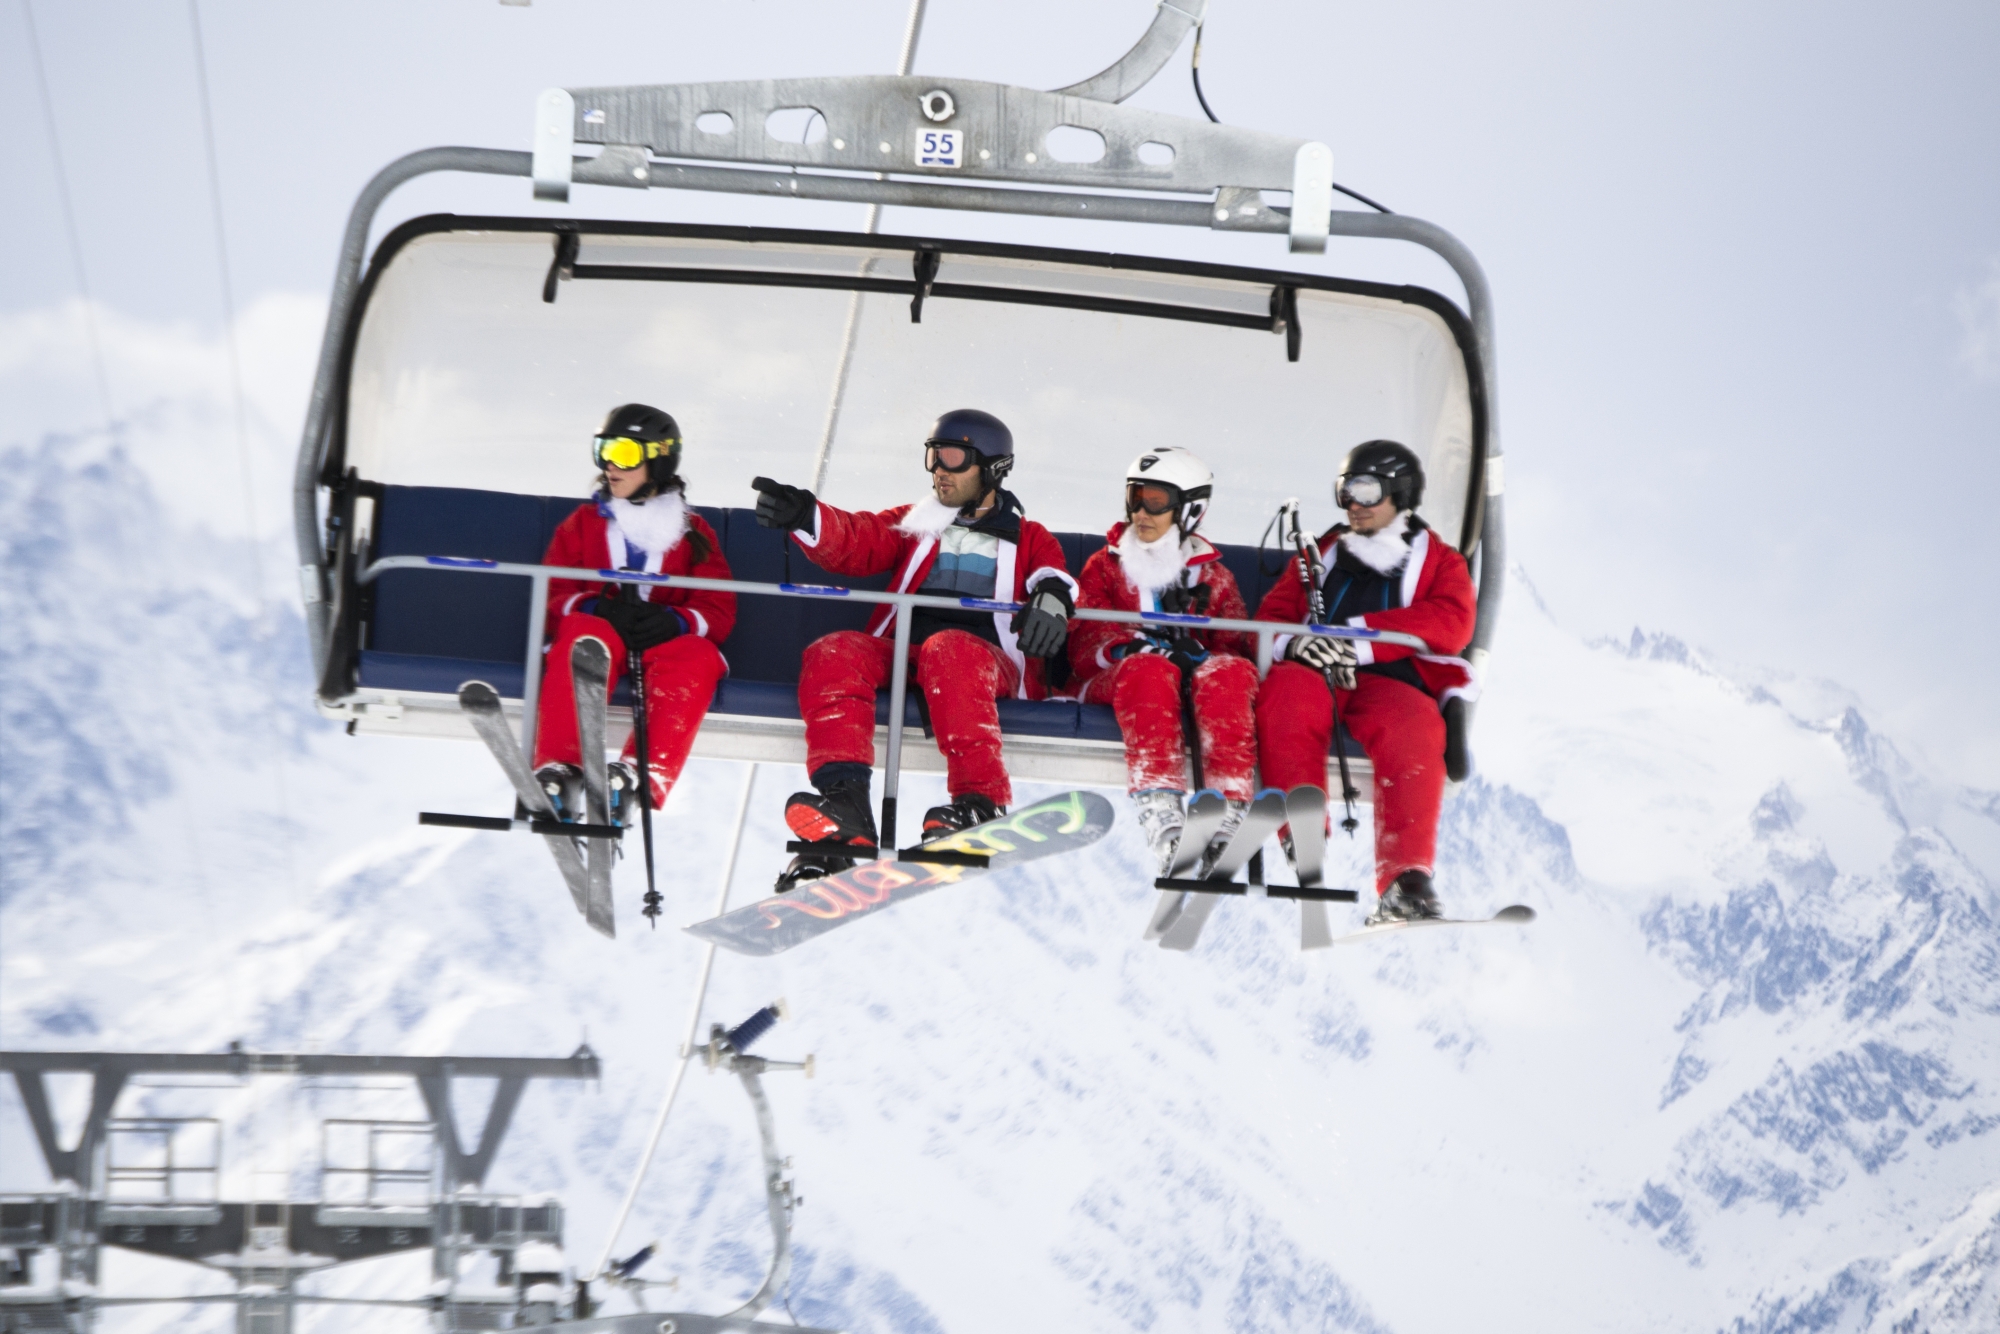 A Verbier, skier le jour de la Saint Nicolas est traditionnellement gratuit pour ceux qui viennent déguisés en Père Noël. 